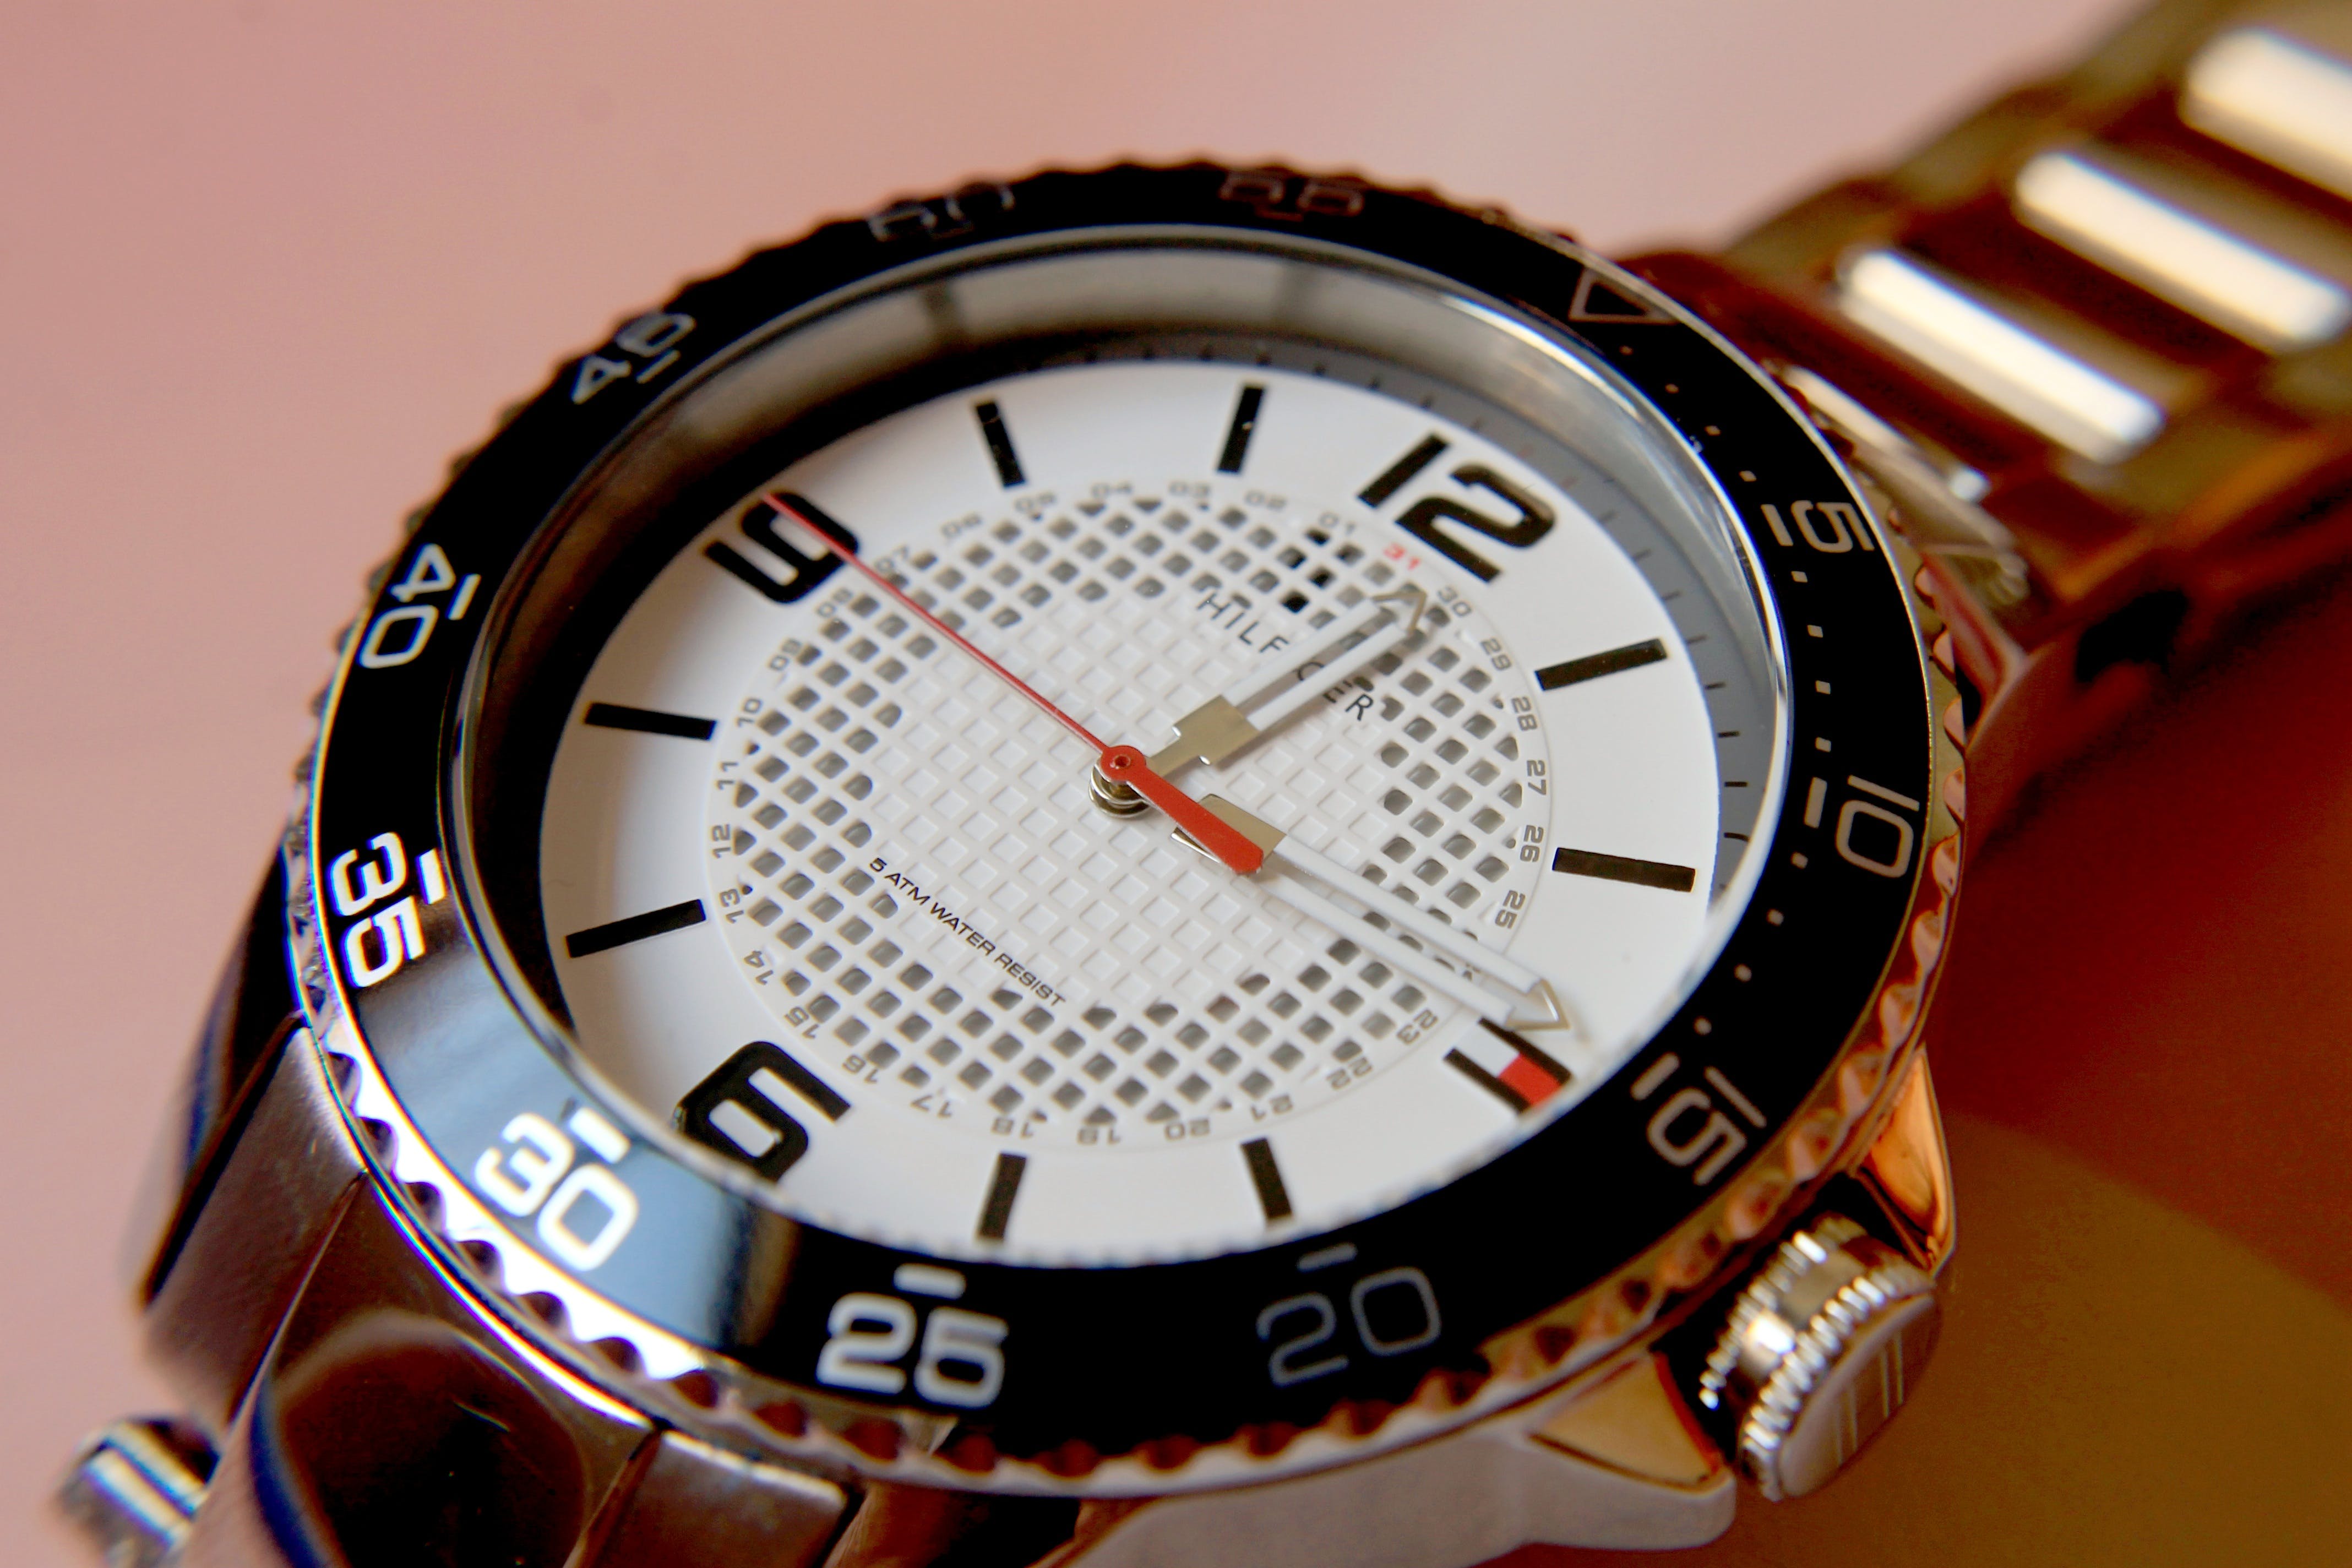 Men's wrist watch